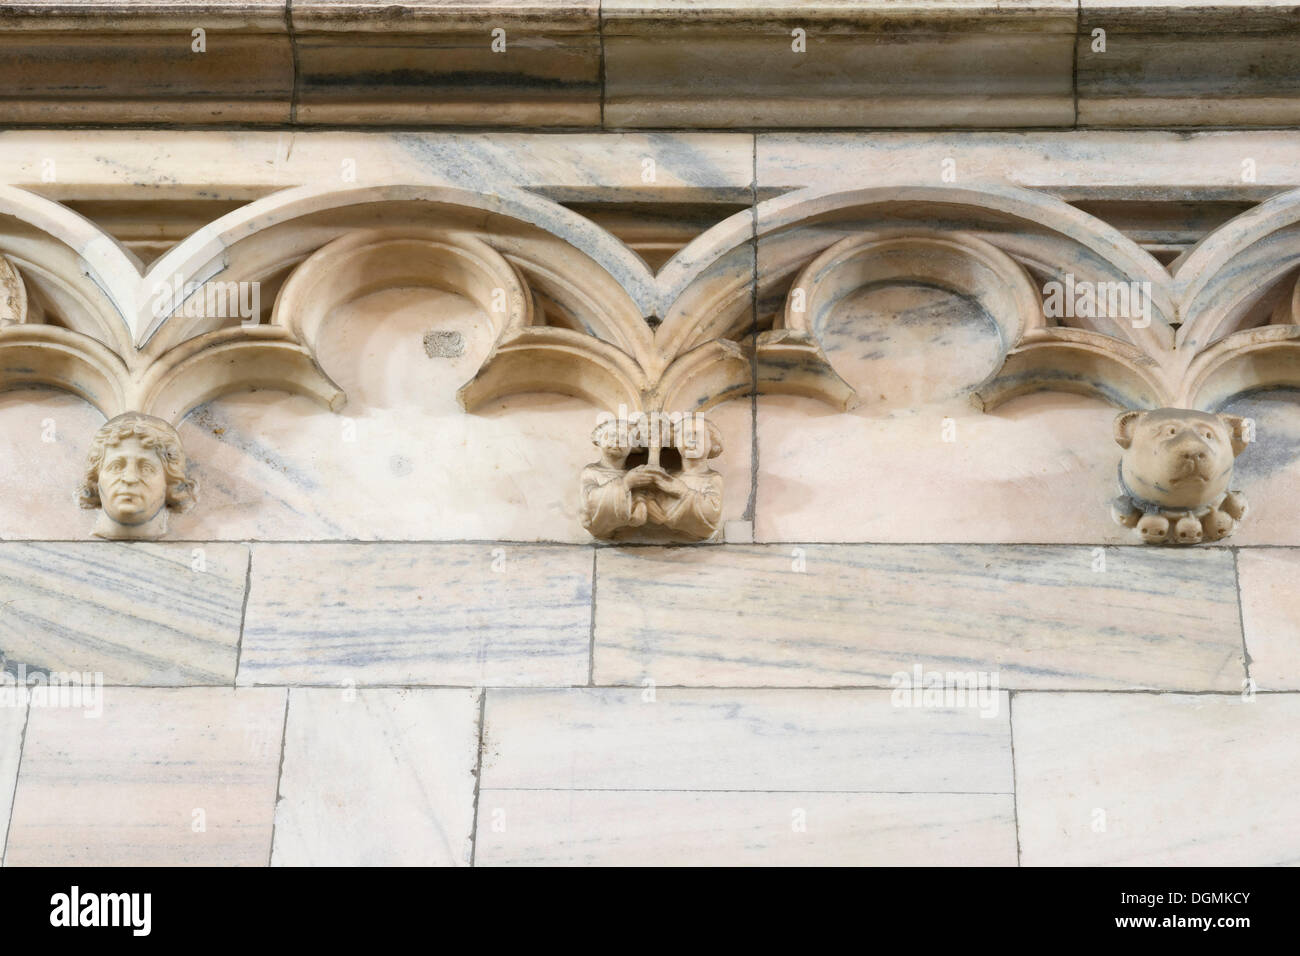 Dettagli in marmo del coro gotico del Duomo di Milano di Santa Maria Nascente, Piazza del Duomo, Milano, Lombardia, Italia Foto Stock